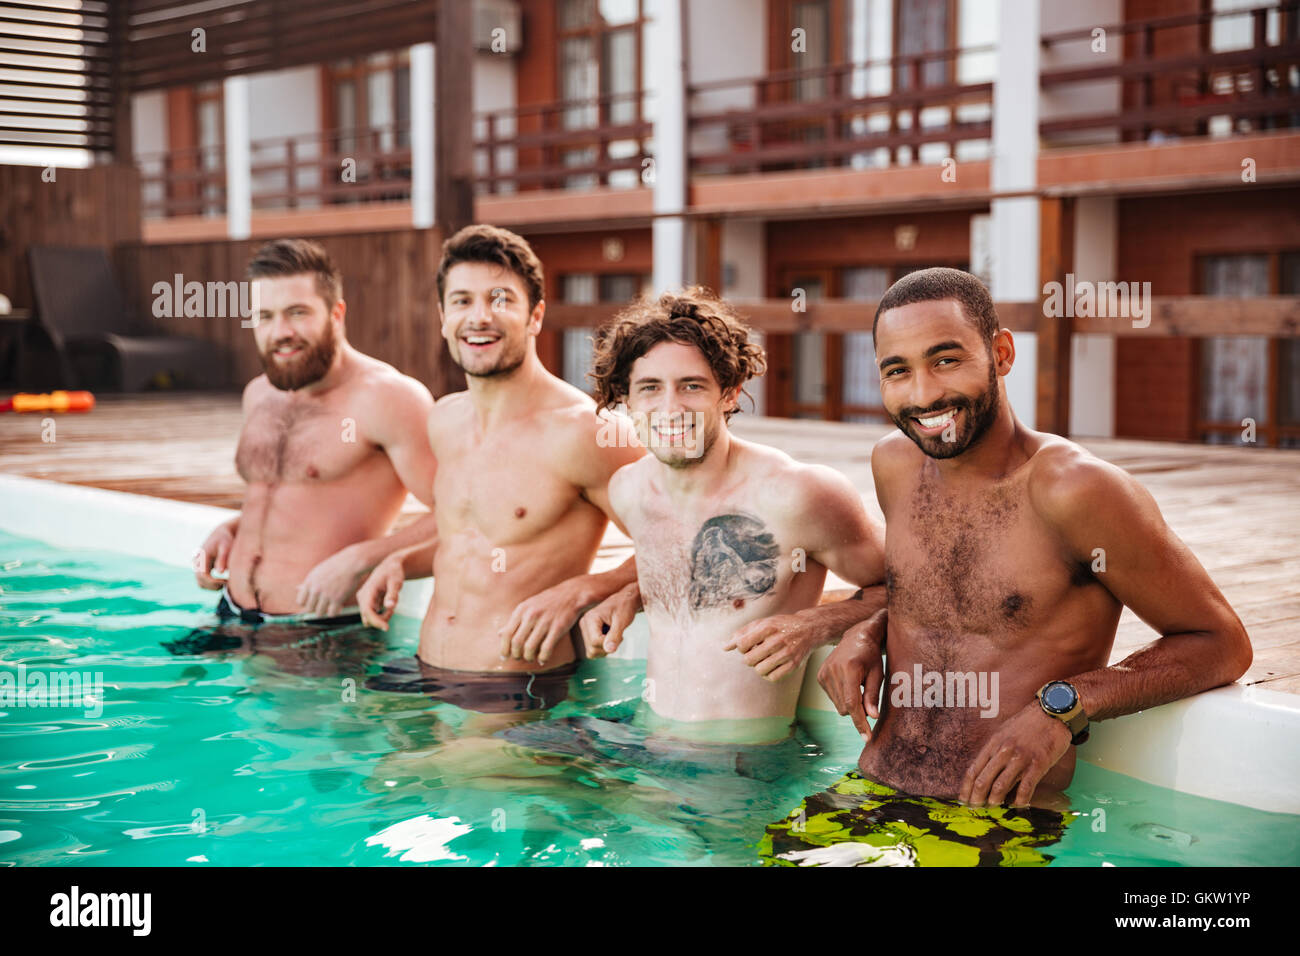 Naked Men Group Swim